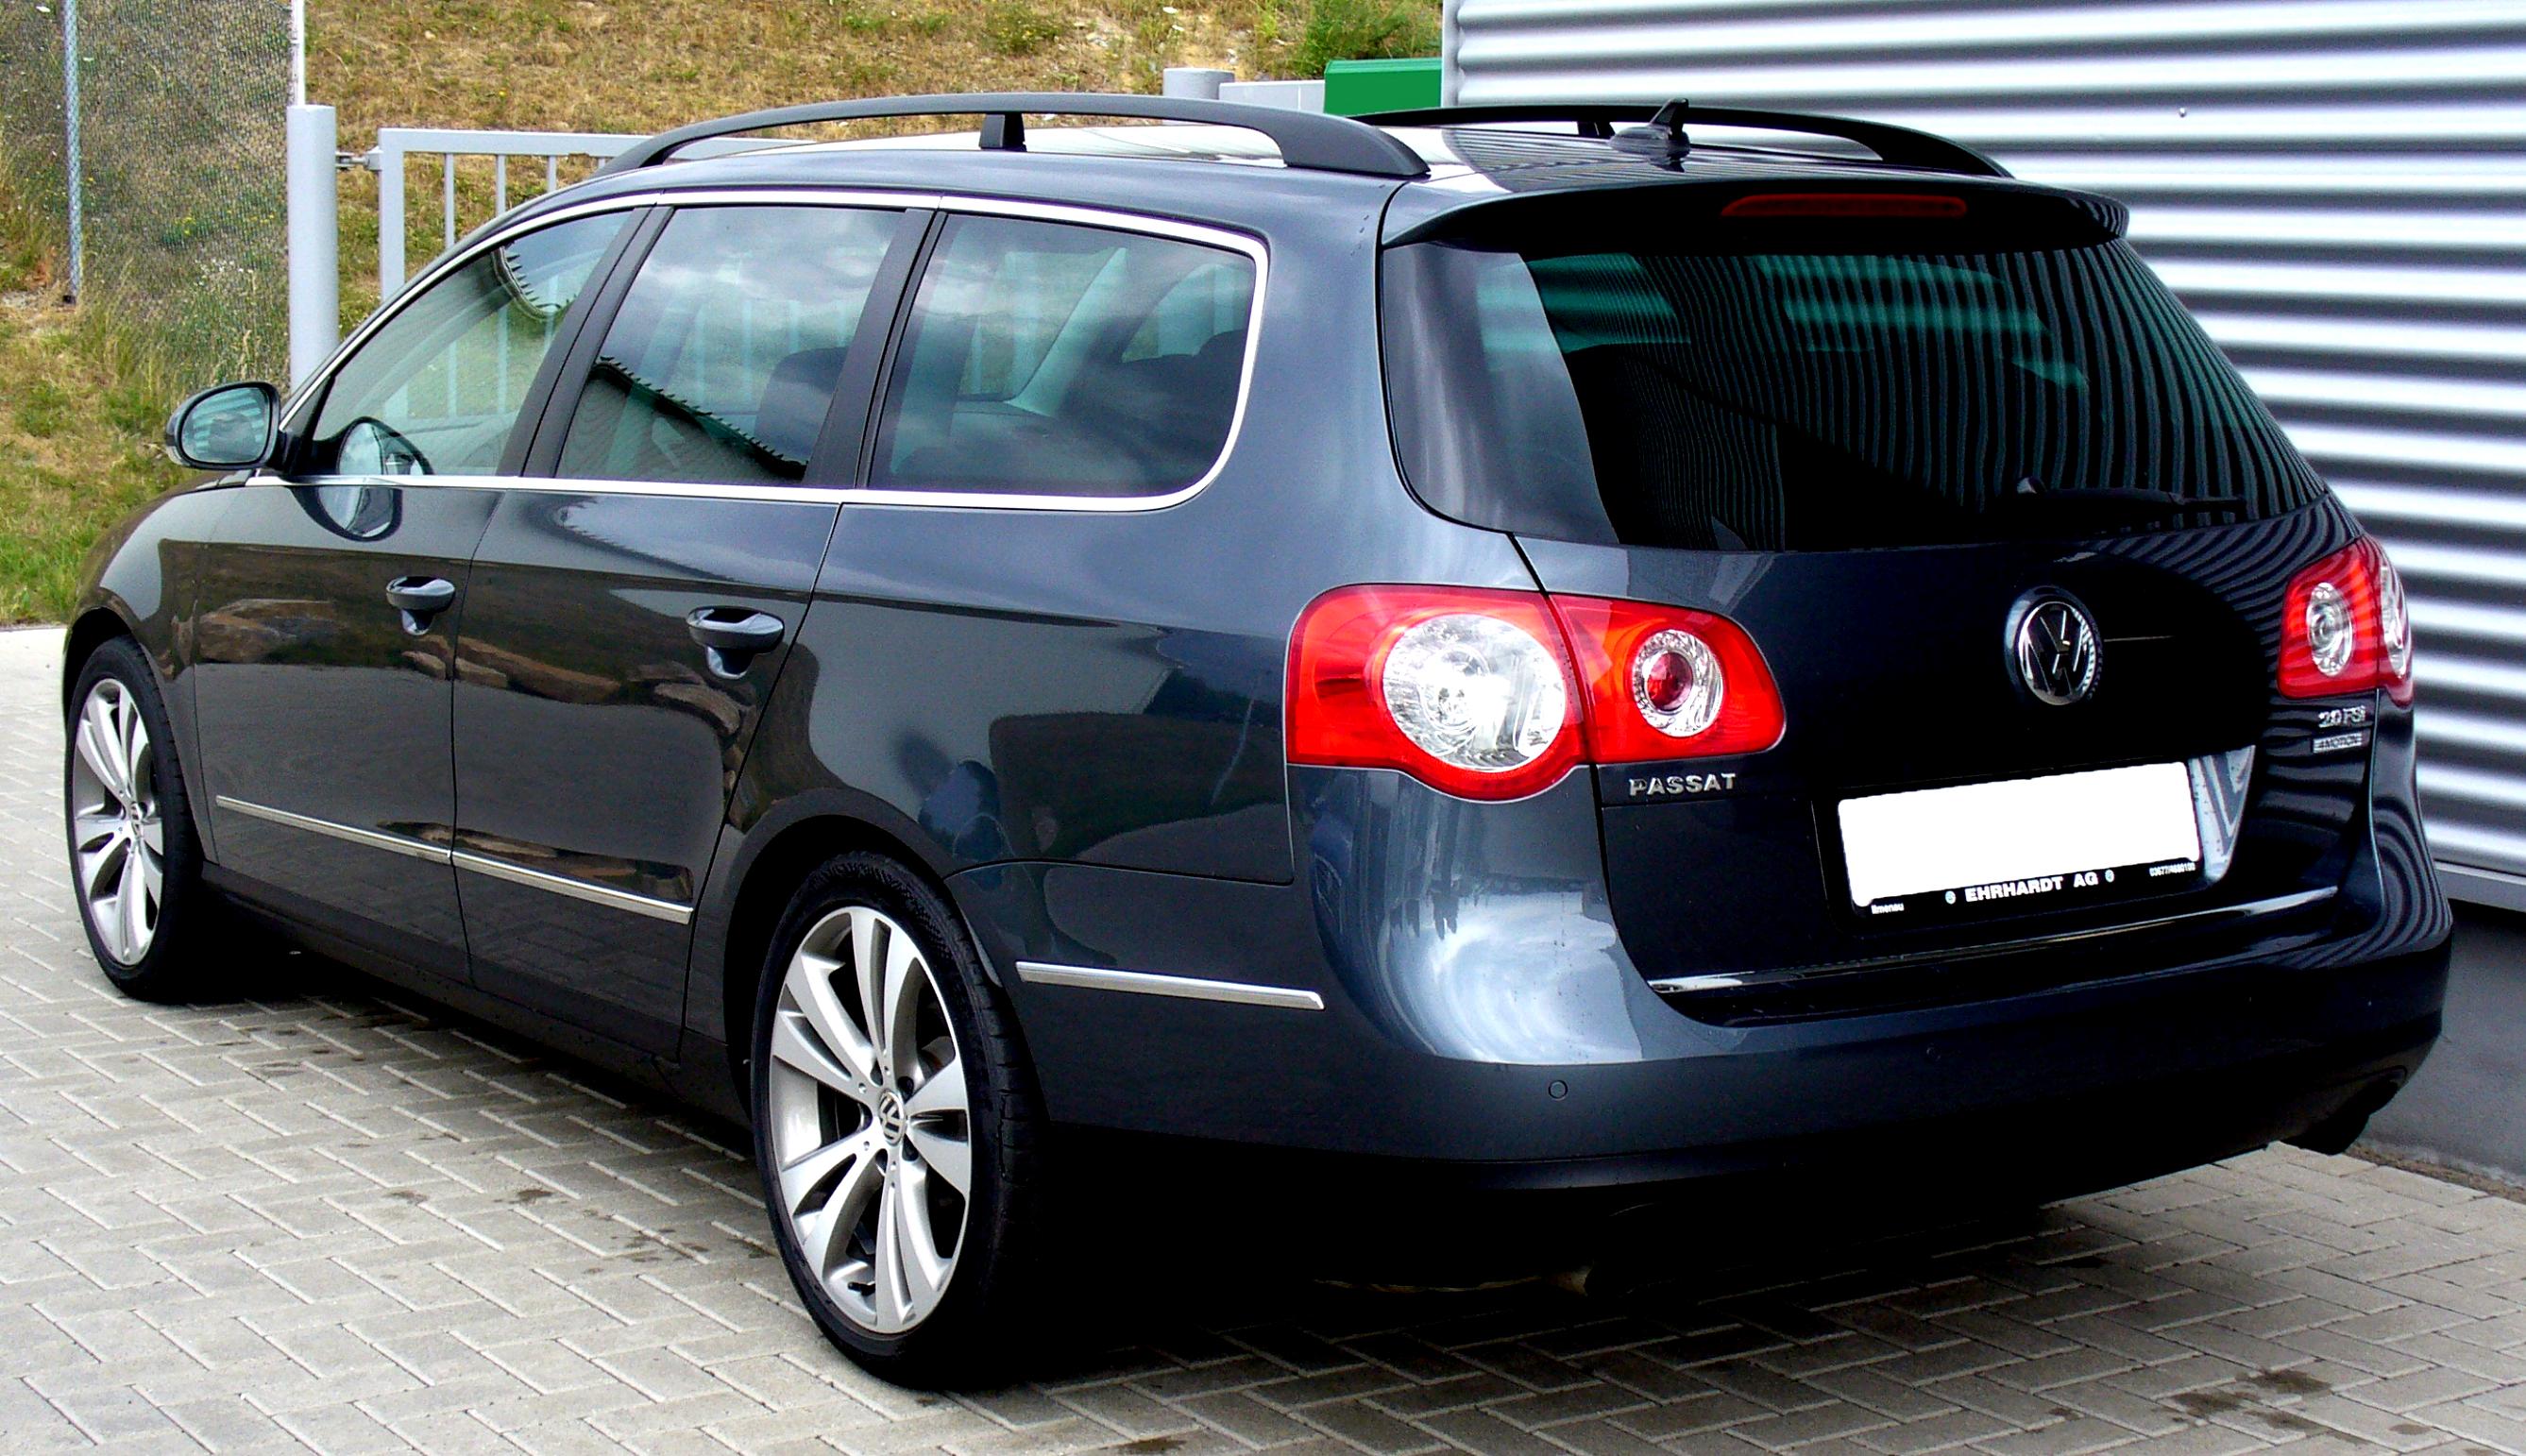 Купить пассат б6 дизель. Пассат б6 универсал. VW Passat b6 универсал. Фольксваген Passat b6 variant. Фольксваген Пассат универсал 2010.